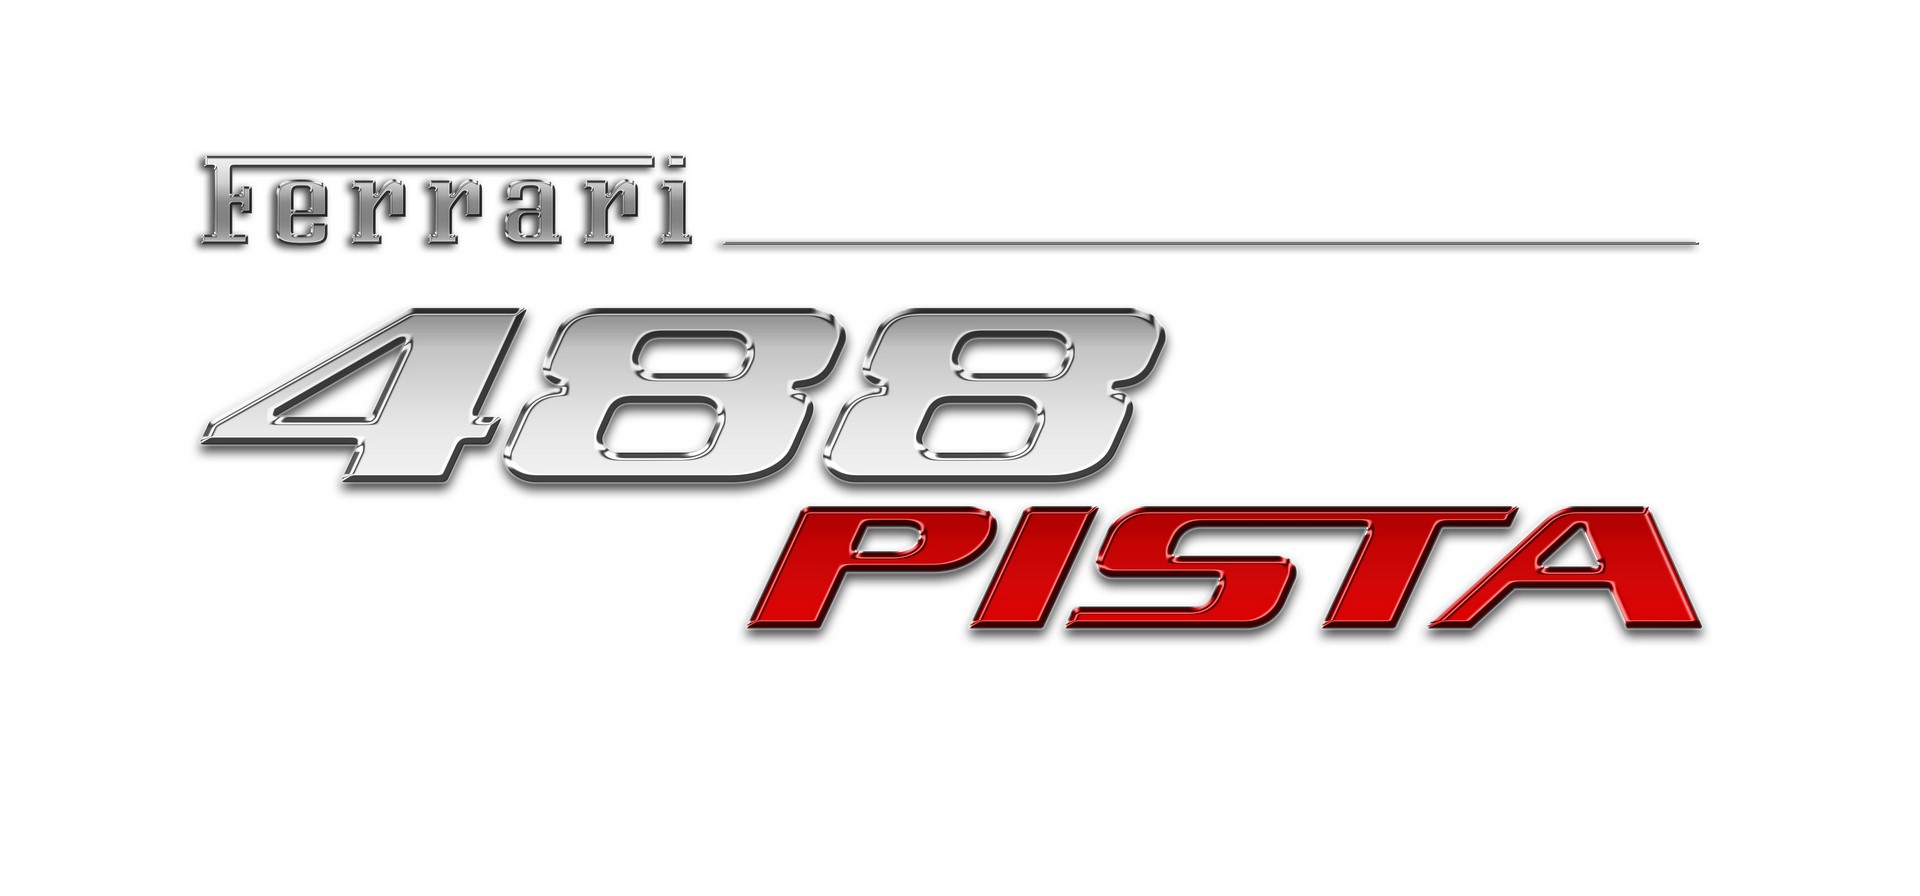 Ferrari 488 Pista (9)